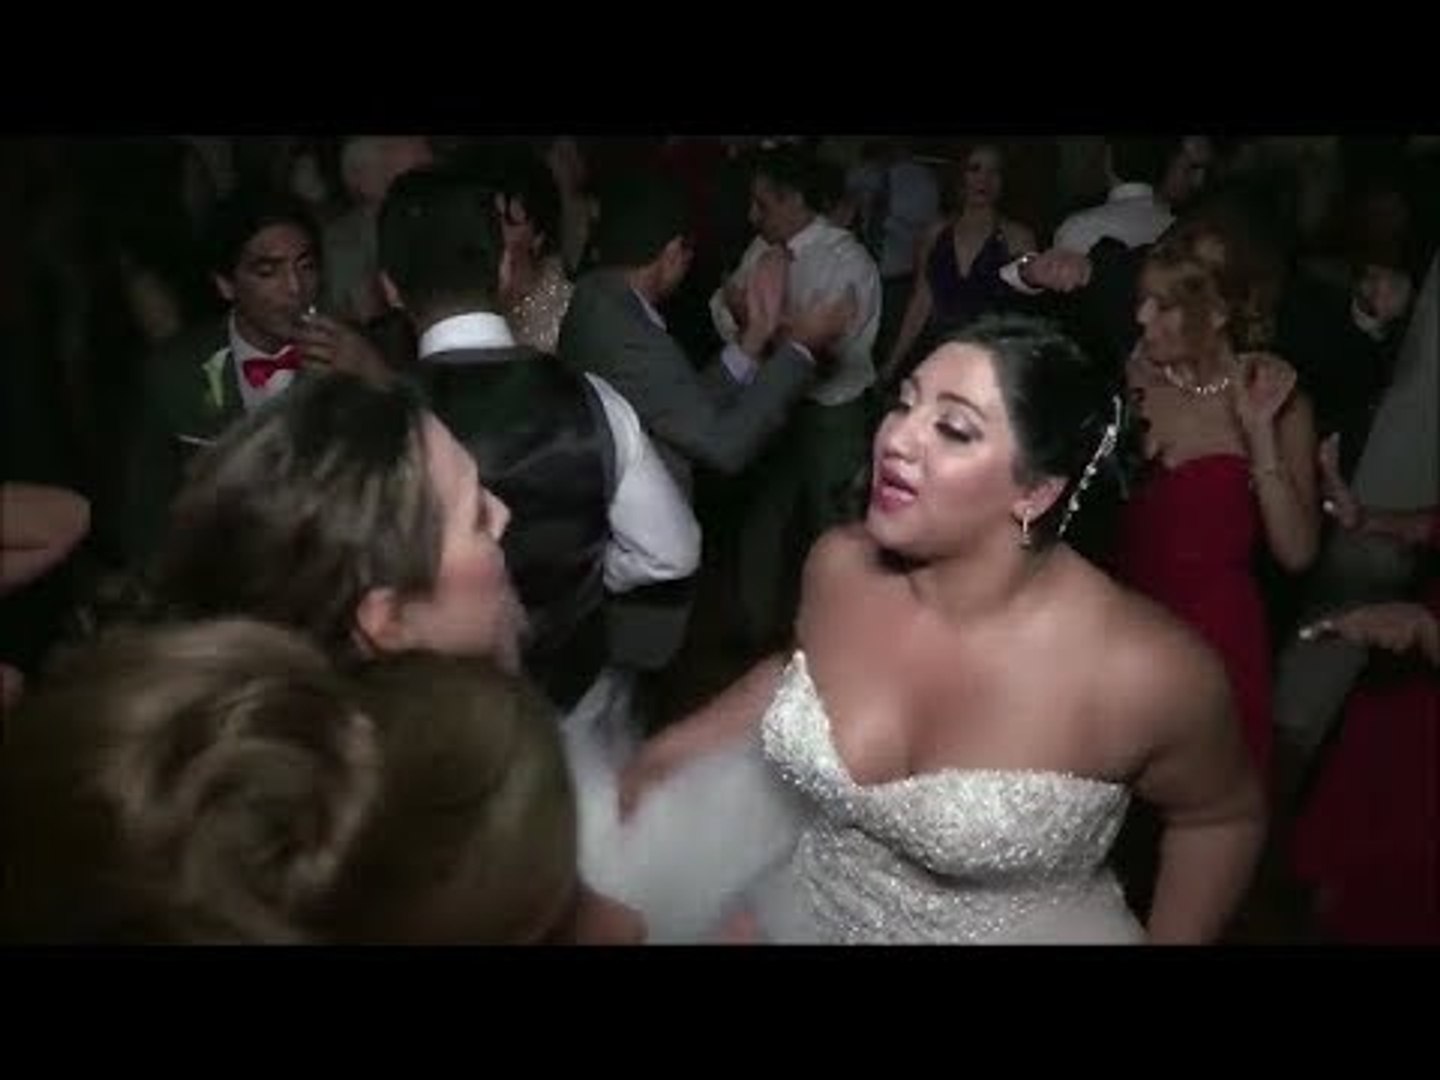 رقص عروسه هيجت العرس برقصها الجميل - video Dailymotion